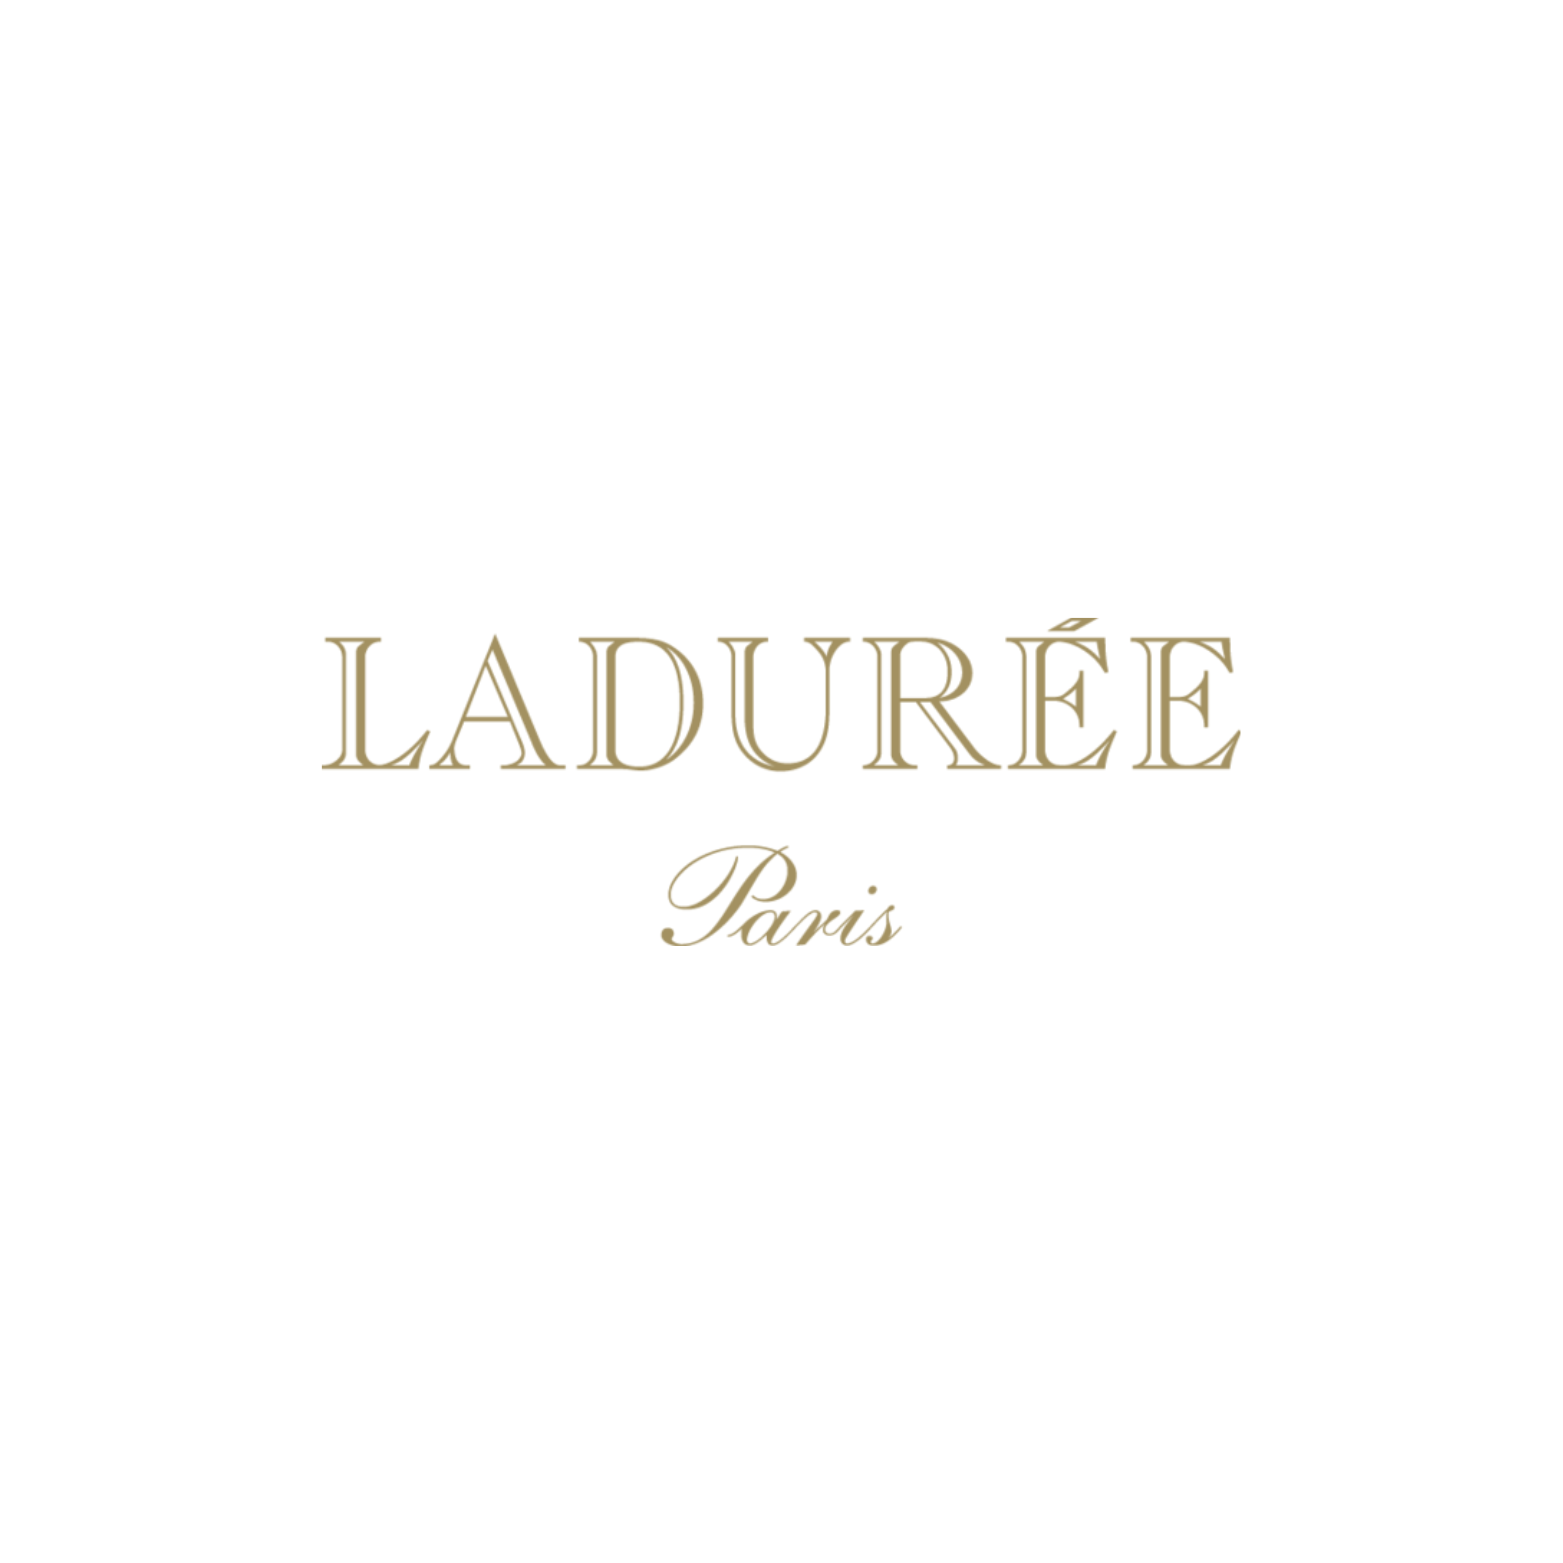 Read more about the article Ladurée